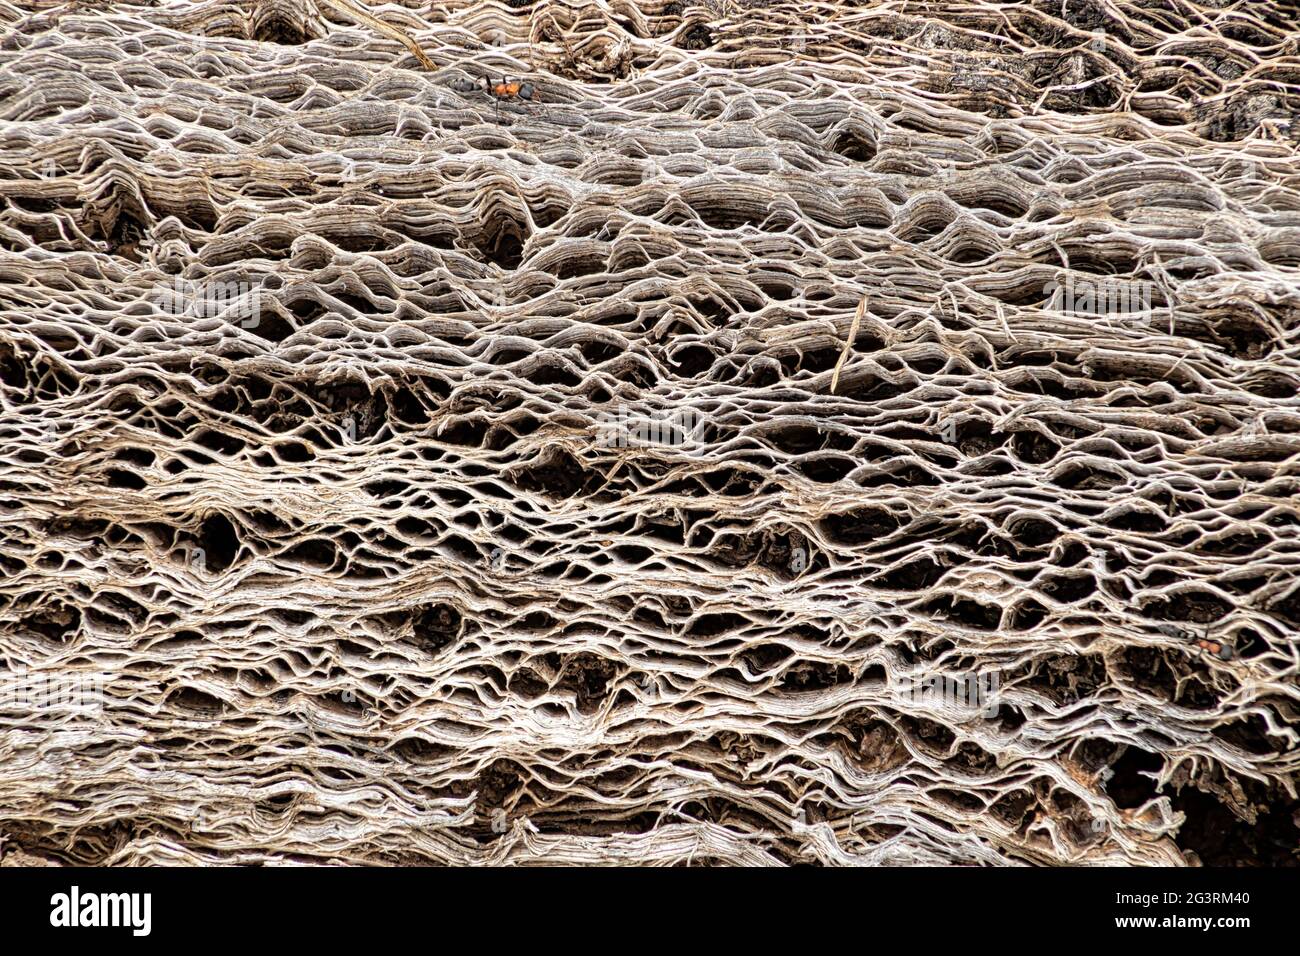 Grunge astratto struttura organica. Primo piano immagine di un tronco asciutto di grande cactus messicano (nopale). Foto Stock